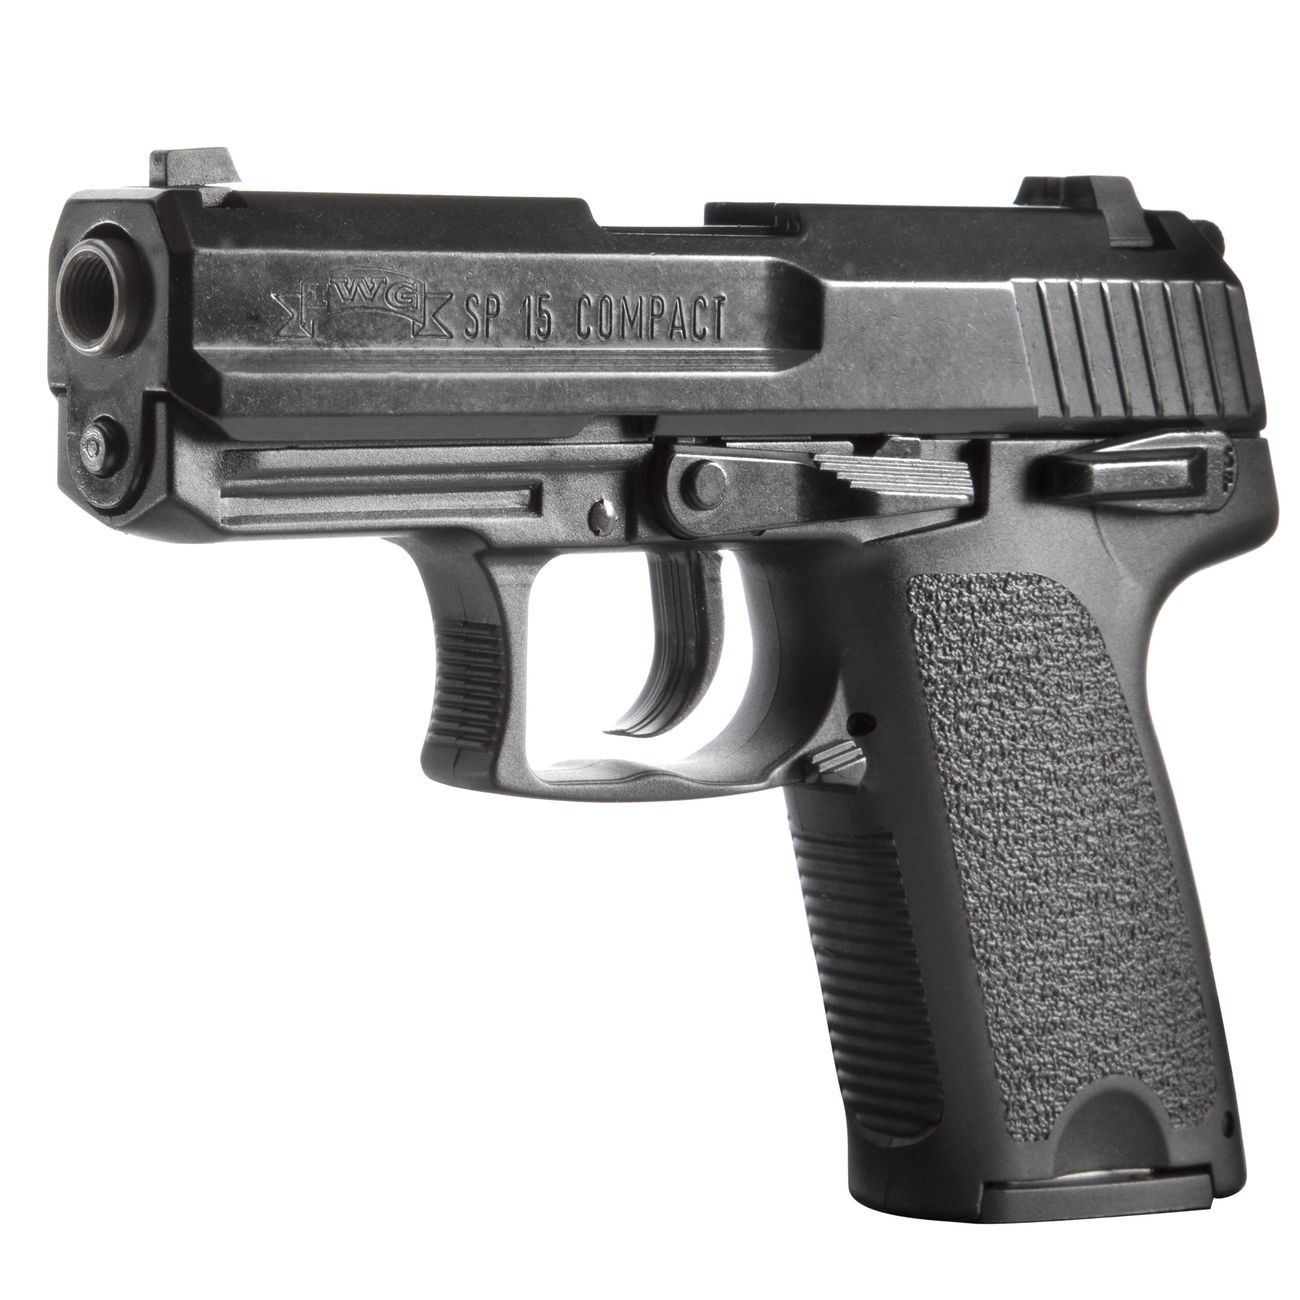 ME IWG SP 15 Compact Schreckschuss Pistole brniert 9mm P.A.K. Bild 1